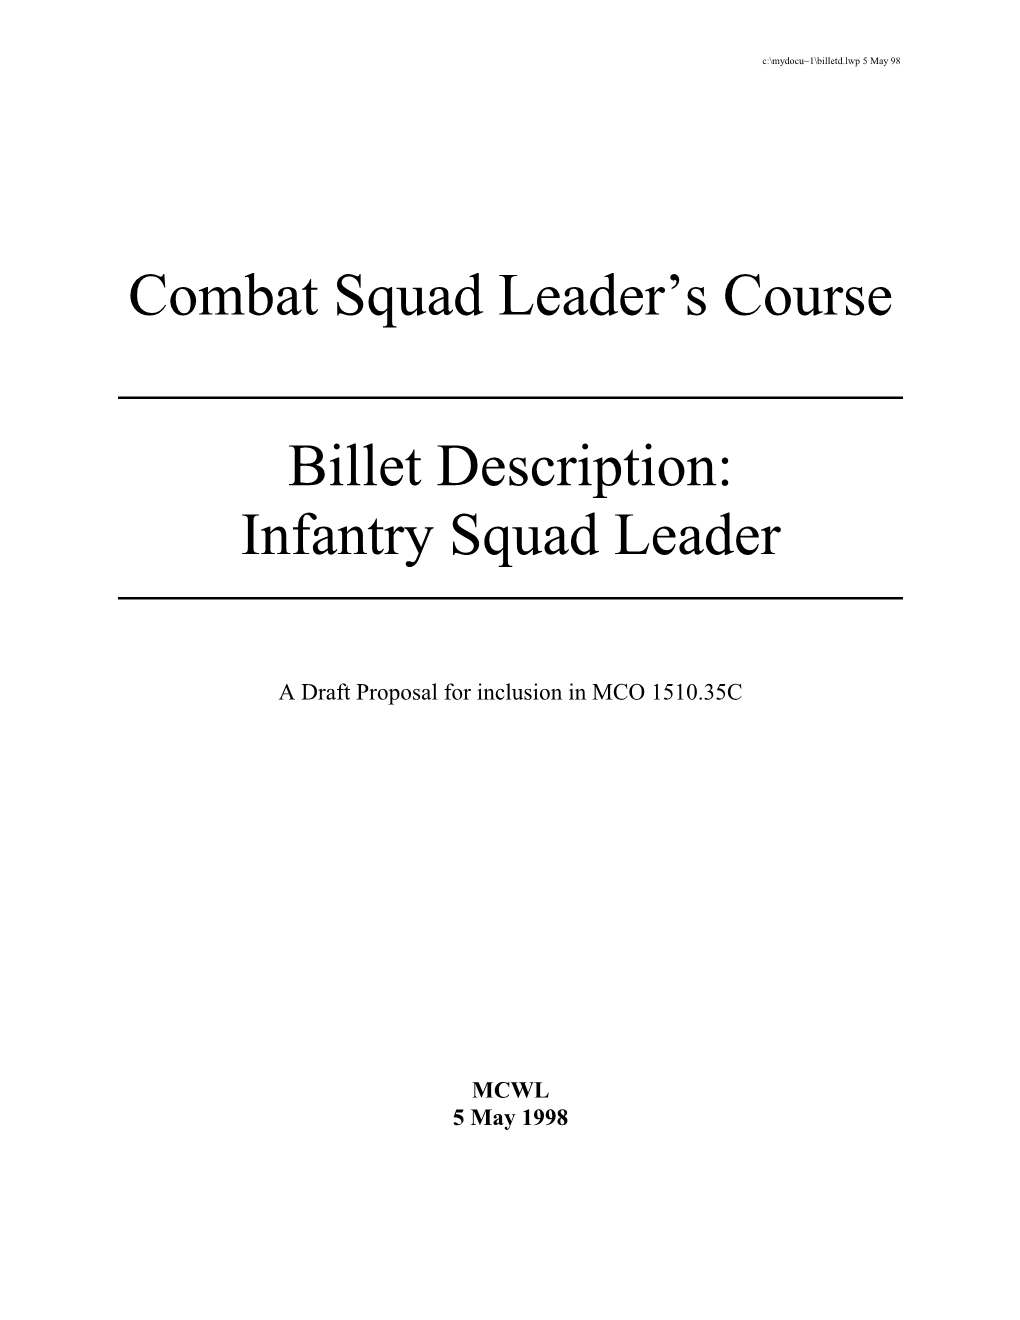 Combat Squad Leader's Course Billet Description